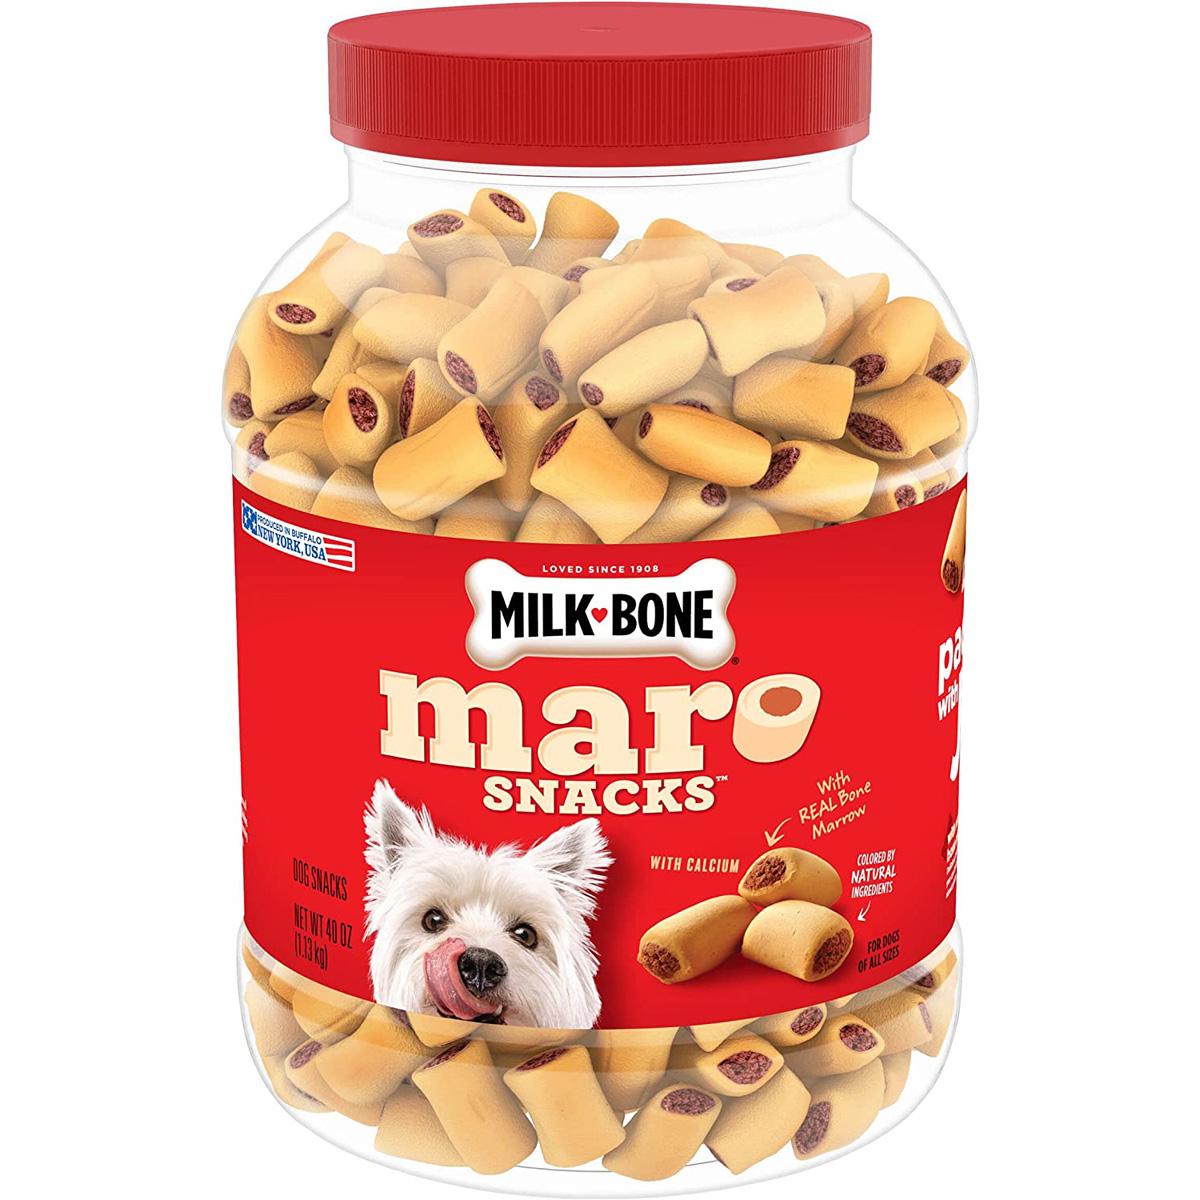 Milk-Bone MaroSnacks Dog Treats with Real Bone Marrow for $6.32 Shipped